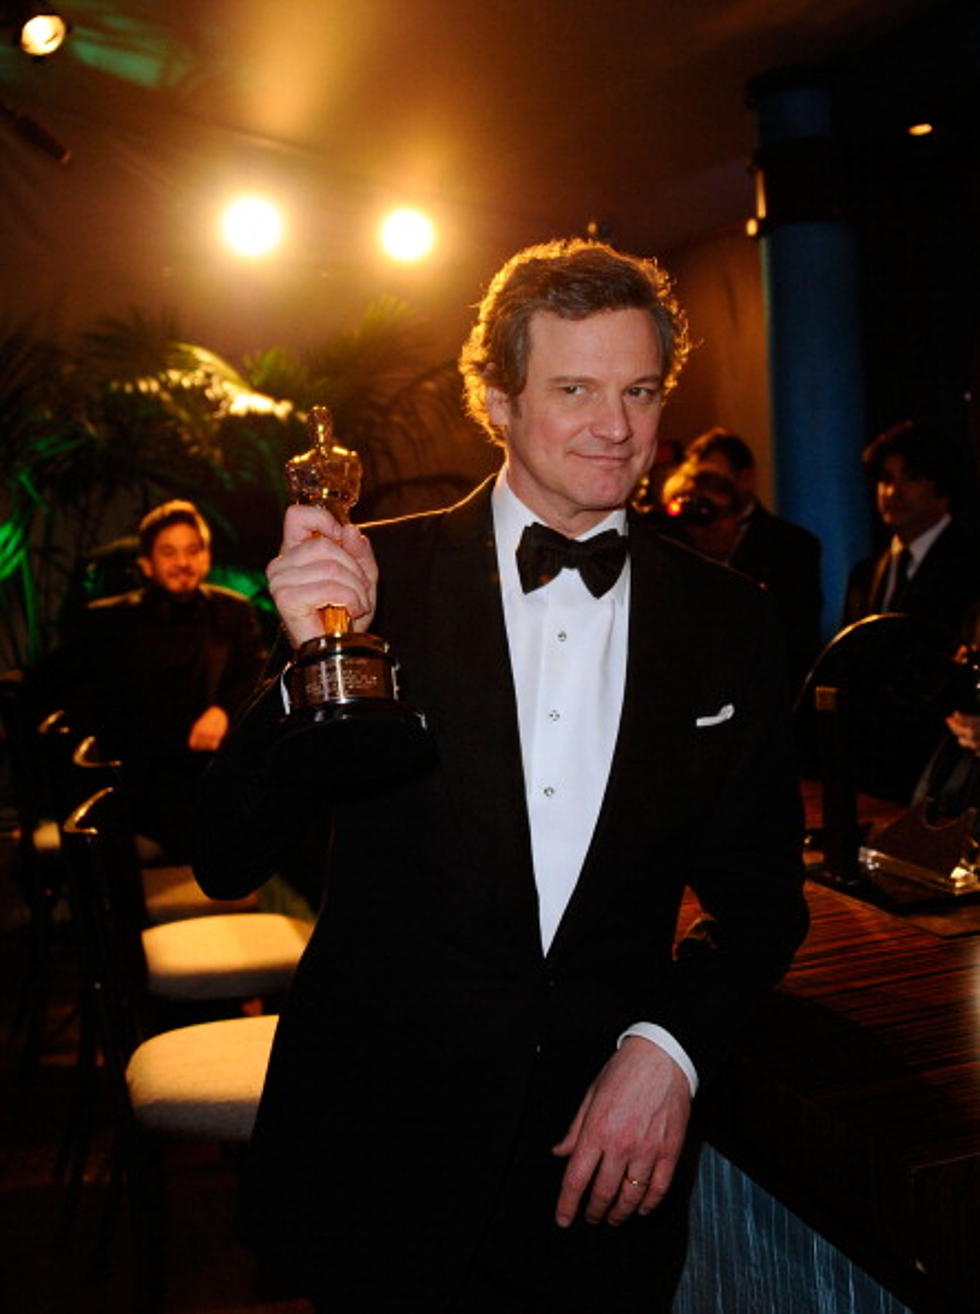 Congrats Colin Firth!